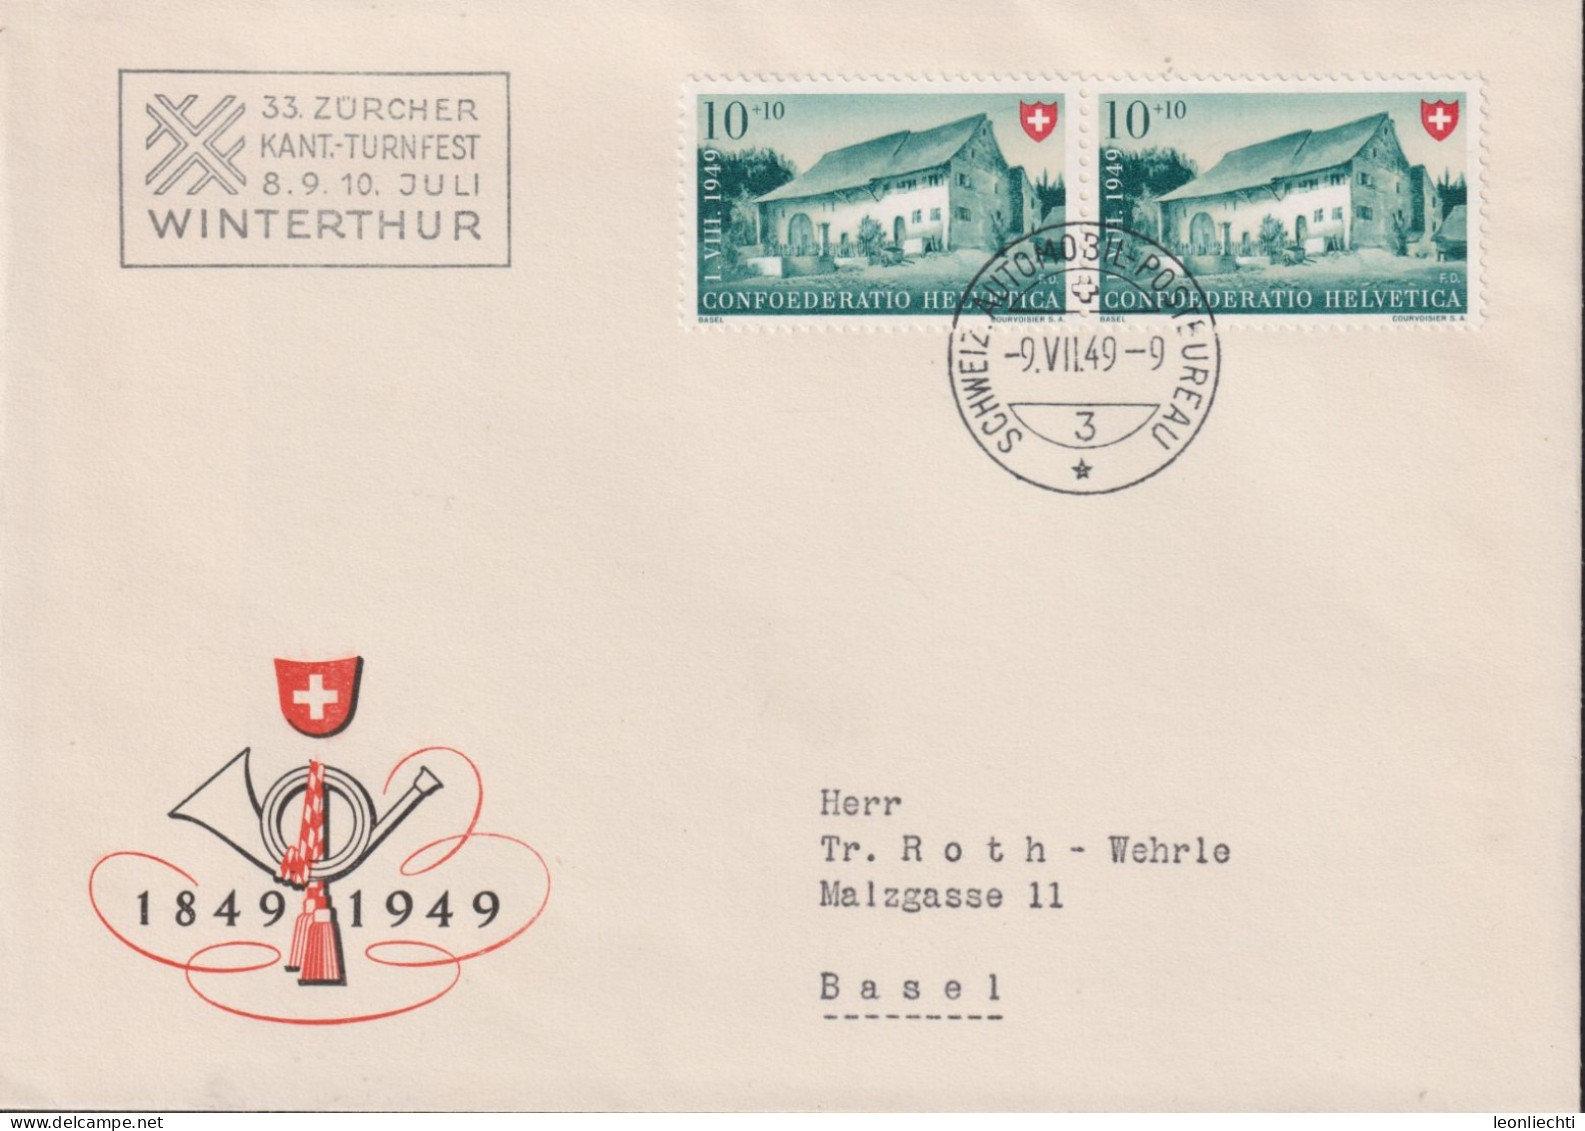 1949 Schweiz Pro Patria, Zum:CH B43, Mi:CH 526, Bauernhaus Im Baselbiet. (33.Zürcher Kant.-Turnfest Winterthur) - Briefe U. Dokumente